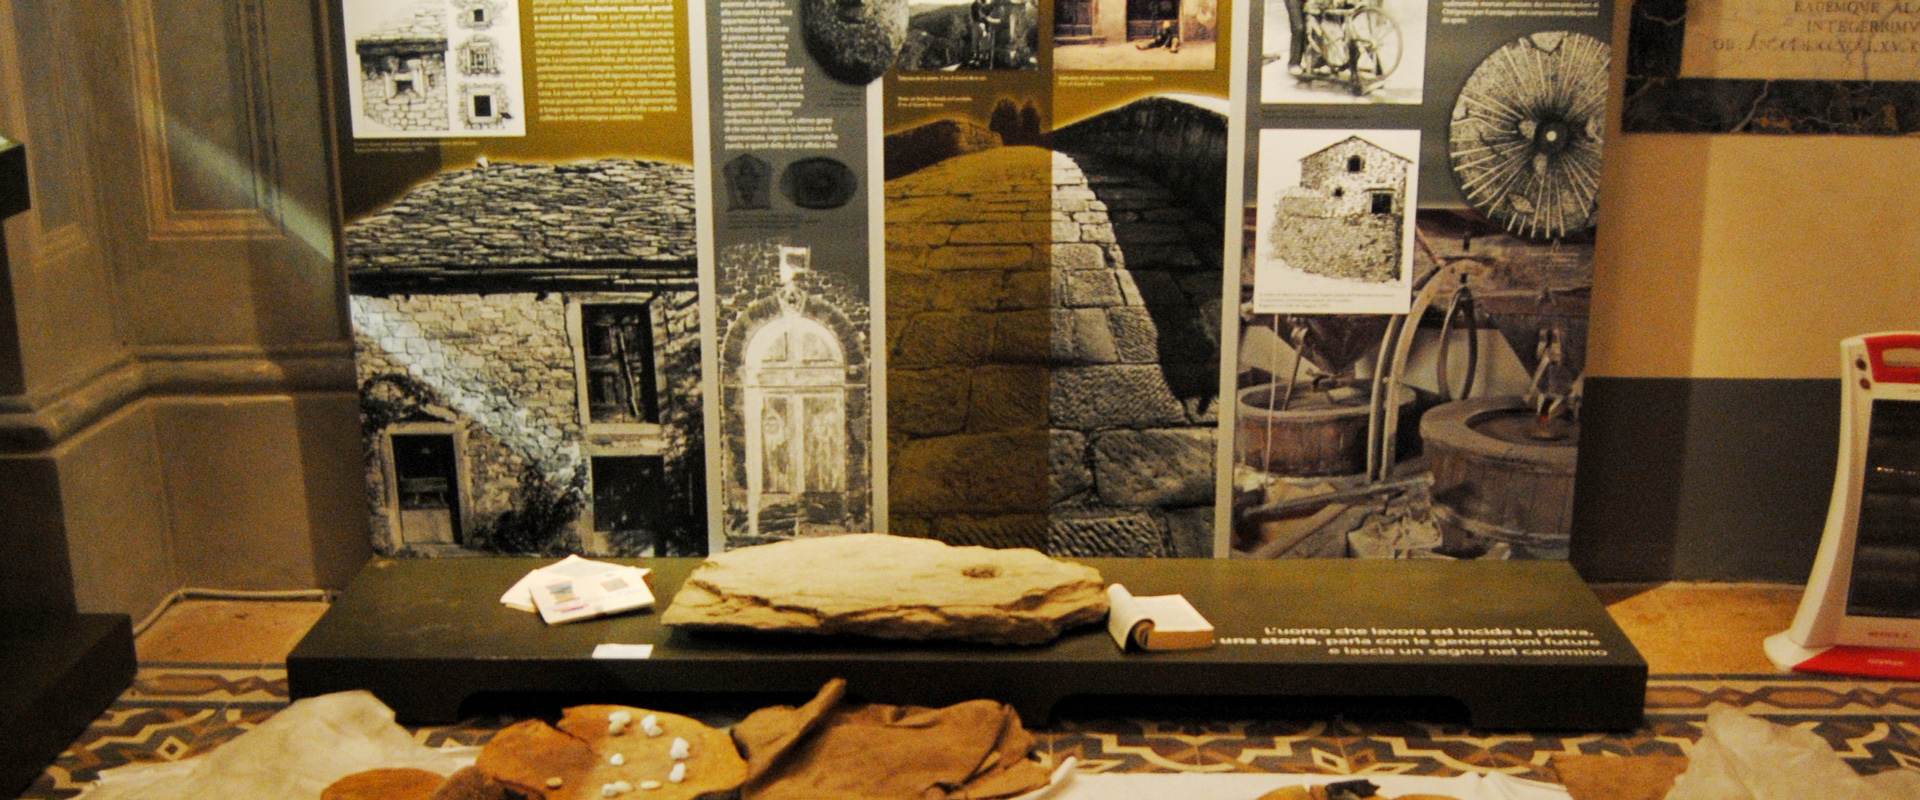 L’Ecomuseo del Casentino compie 20 anni: il programma delle celebrazioni